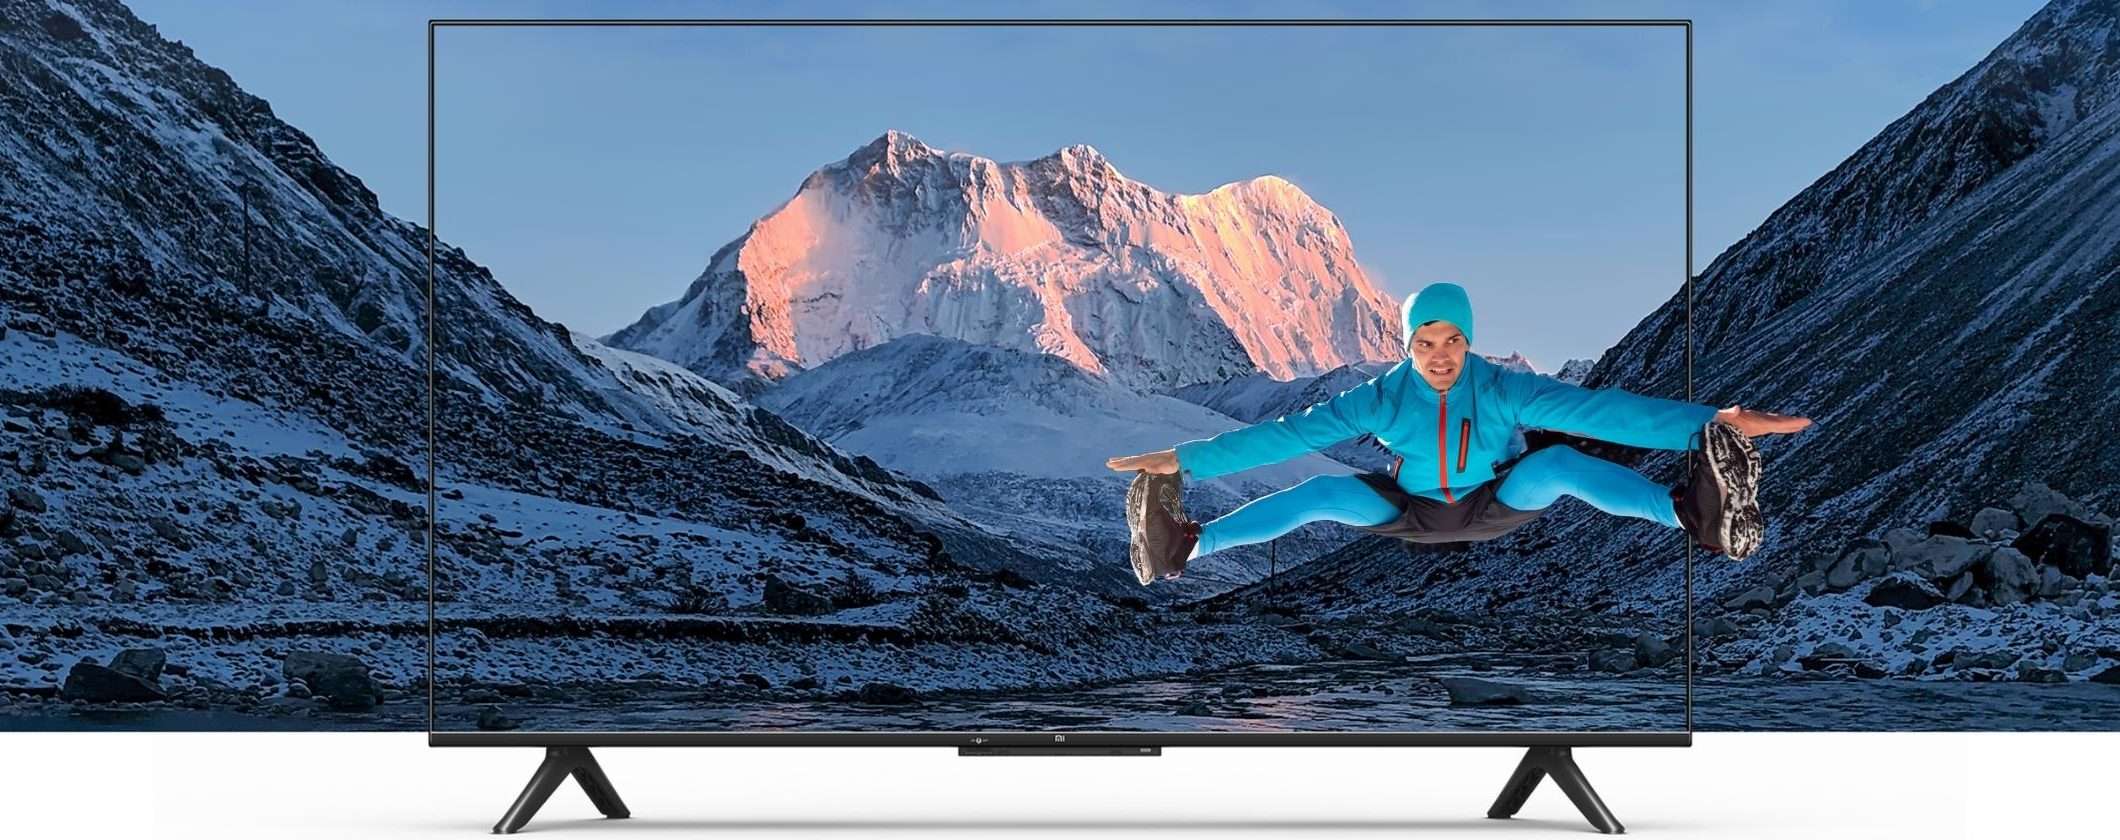 Xiaomi Mi TV P1 50 è cinema in casa a un prezzo folle su Amazon